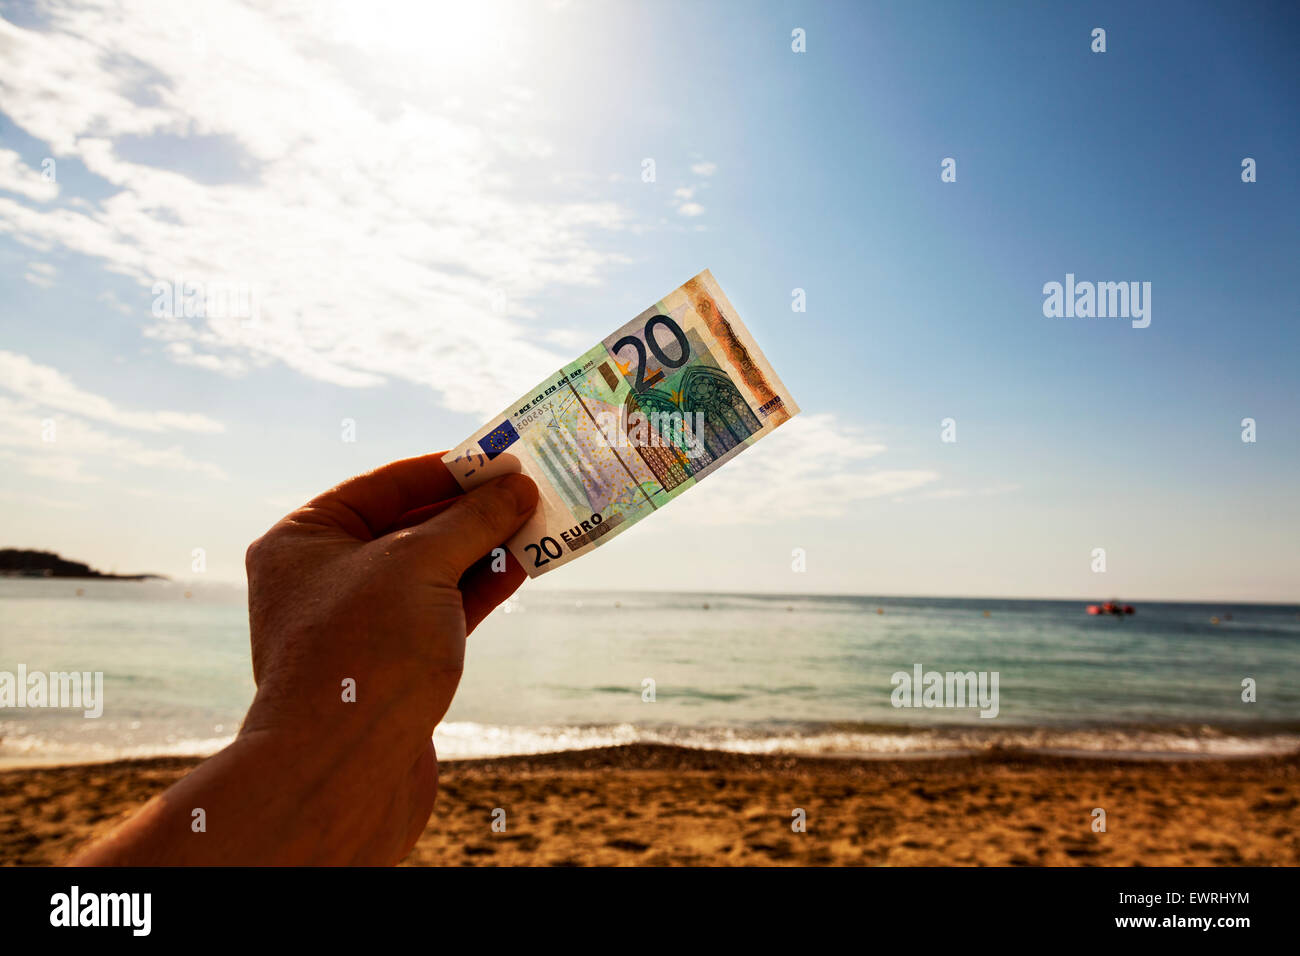 Euro Währung Anmerkung 20 Geld Bar hand gegen Himmel Strand Urlaub Urlaub am Meer Urlaub Ibiza Spanien Spanisch Resort Stockfoto